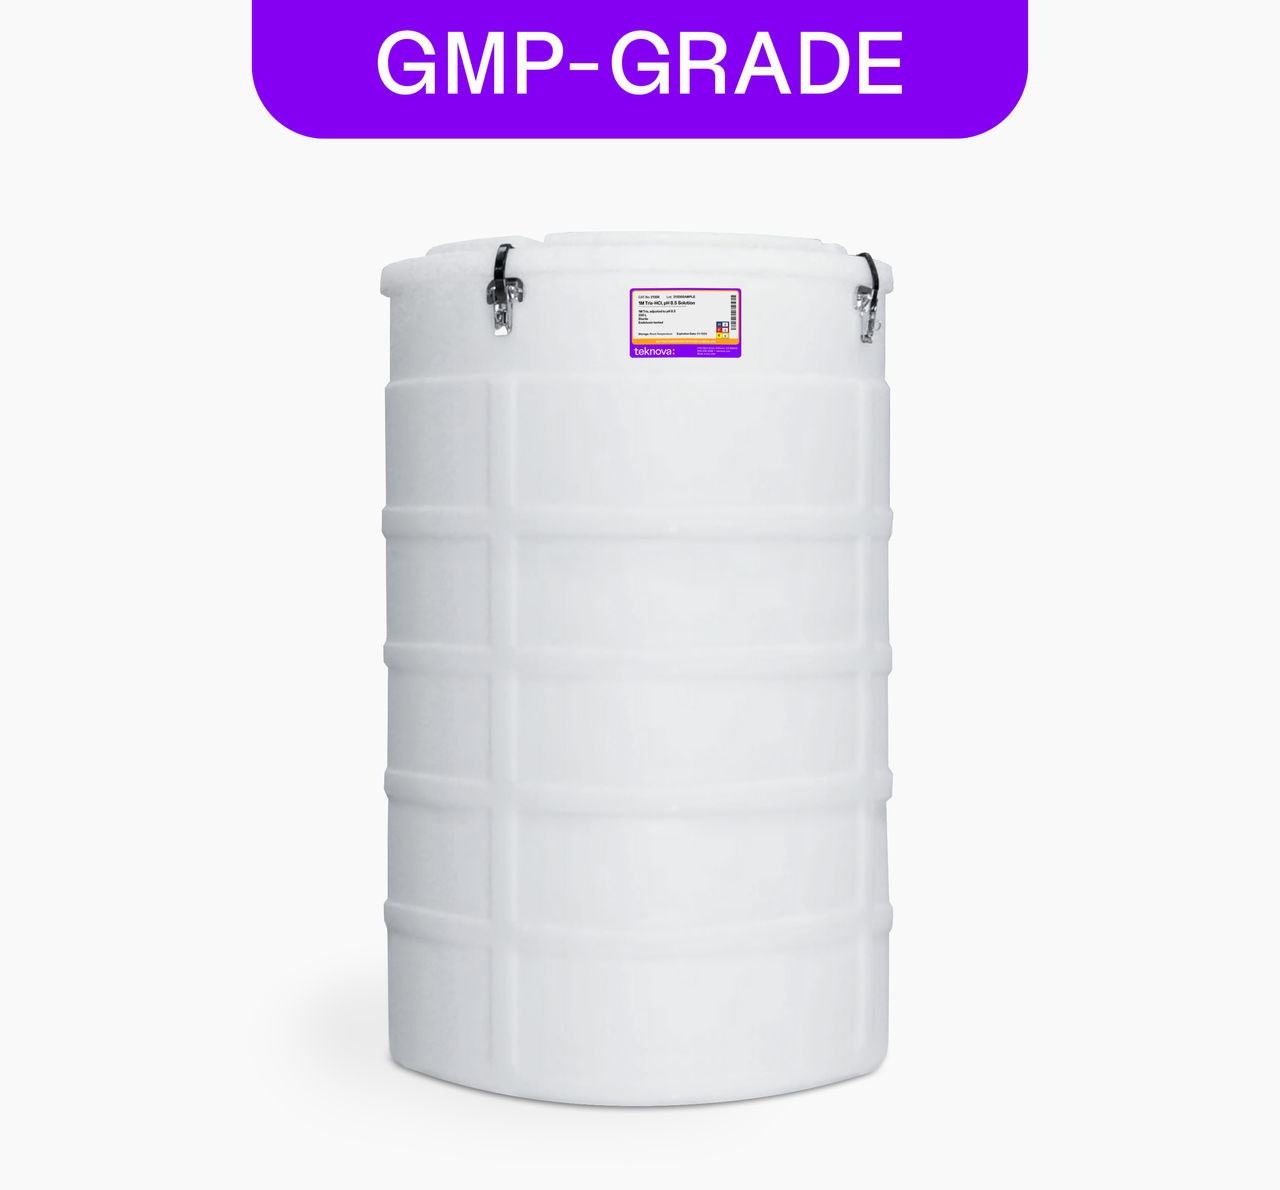 1M Tris-HCl, pH 8.5 Solution, 200L Bag, GMP-grade